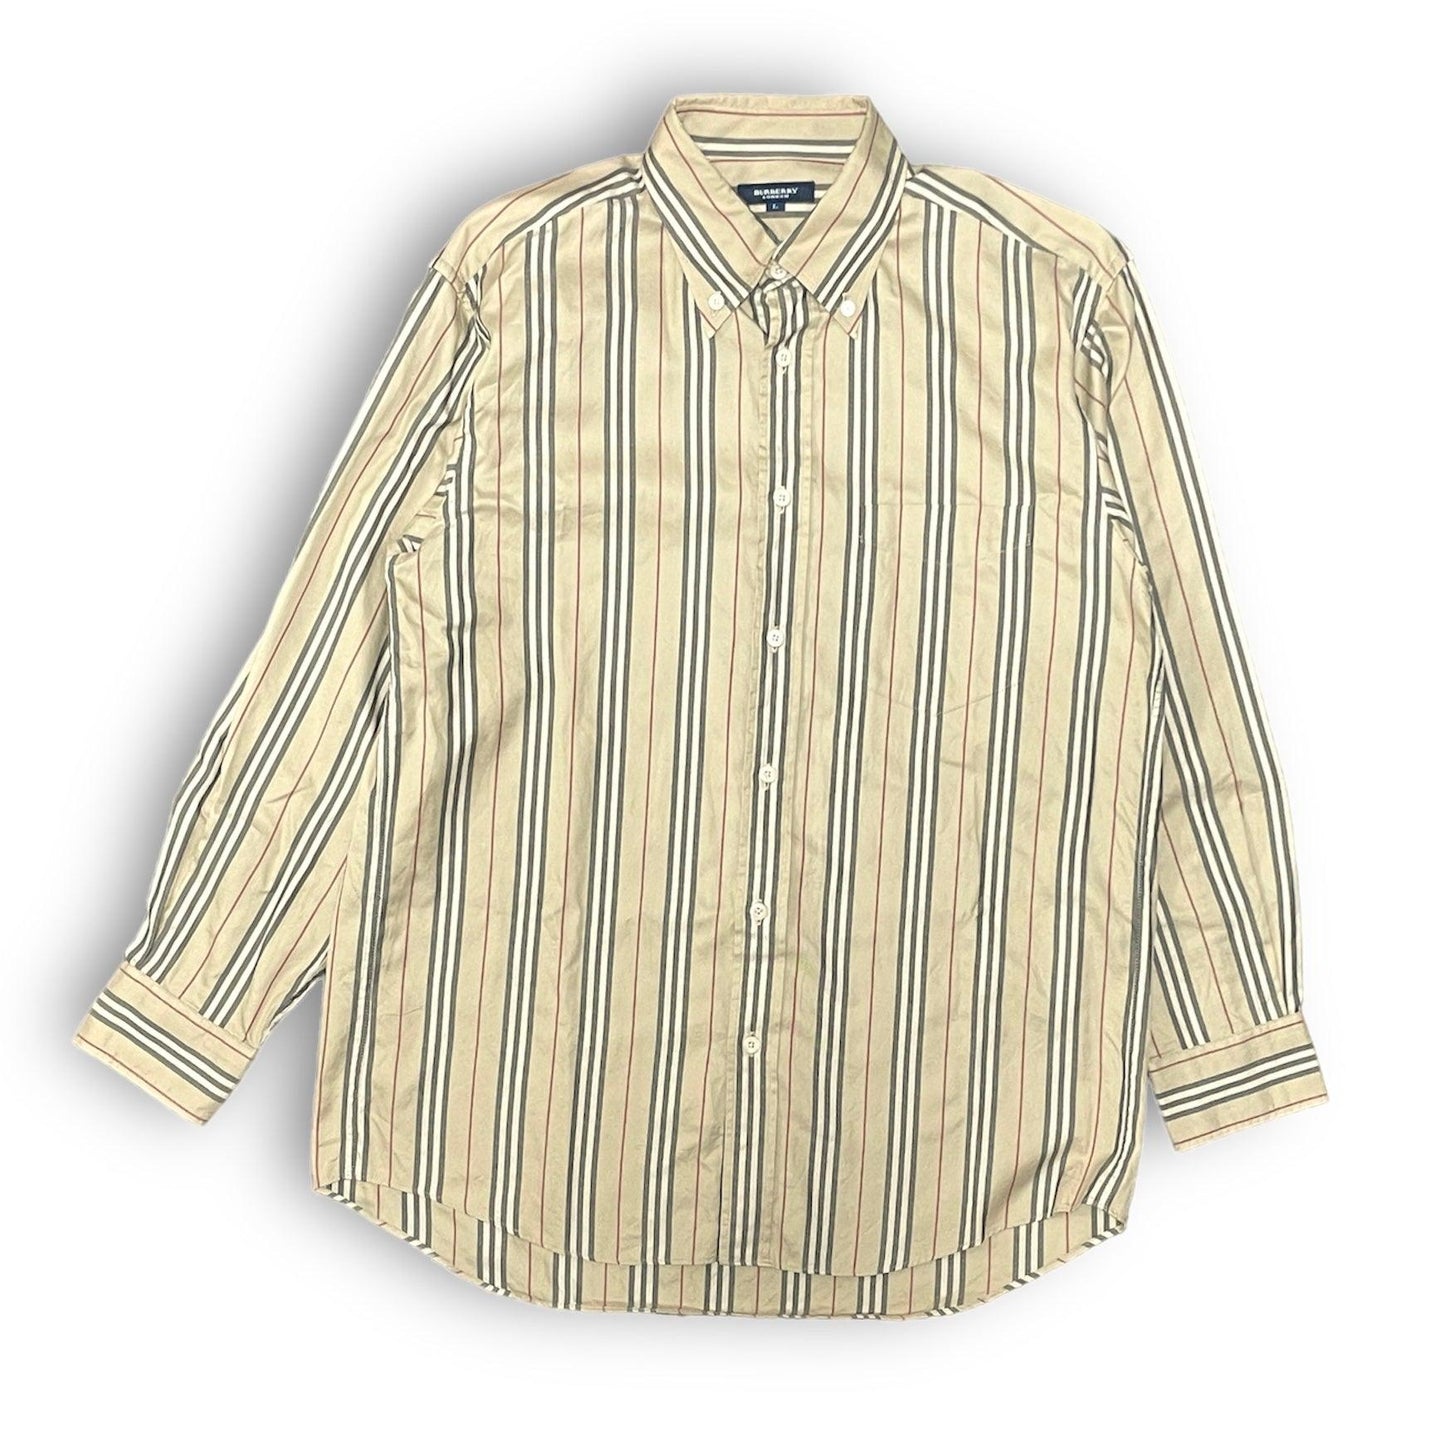 Burberry london shirt burberry shirt striped